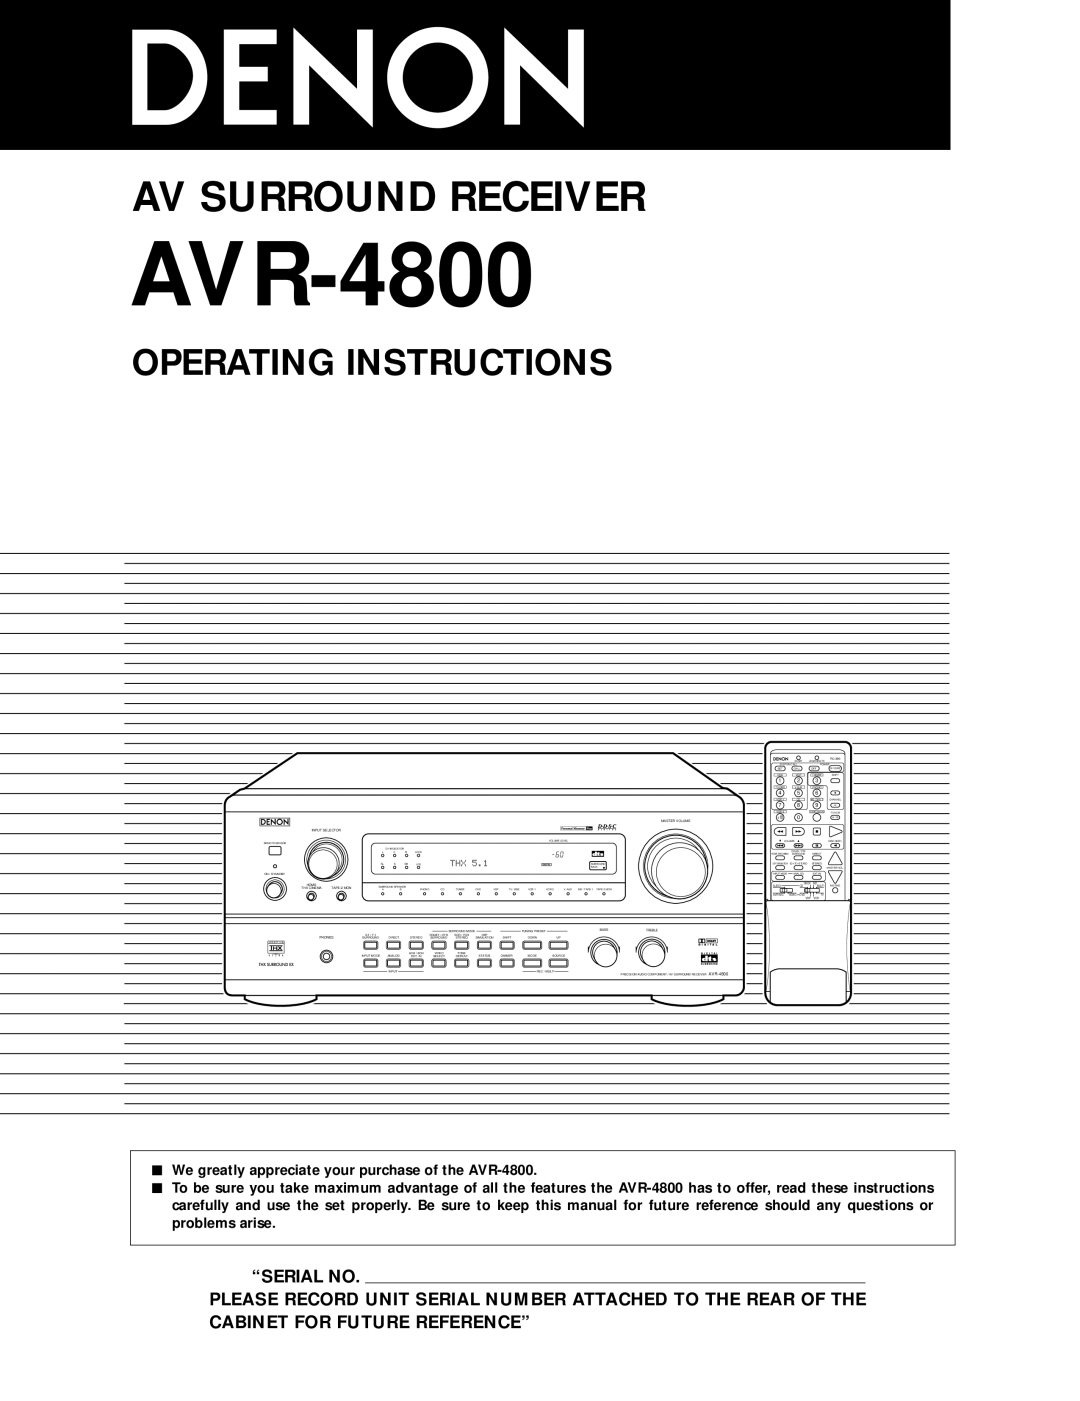 Denon AVR-4800 manual Operating Instructions, “Serial No, Av Surround Receiver 